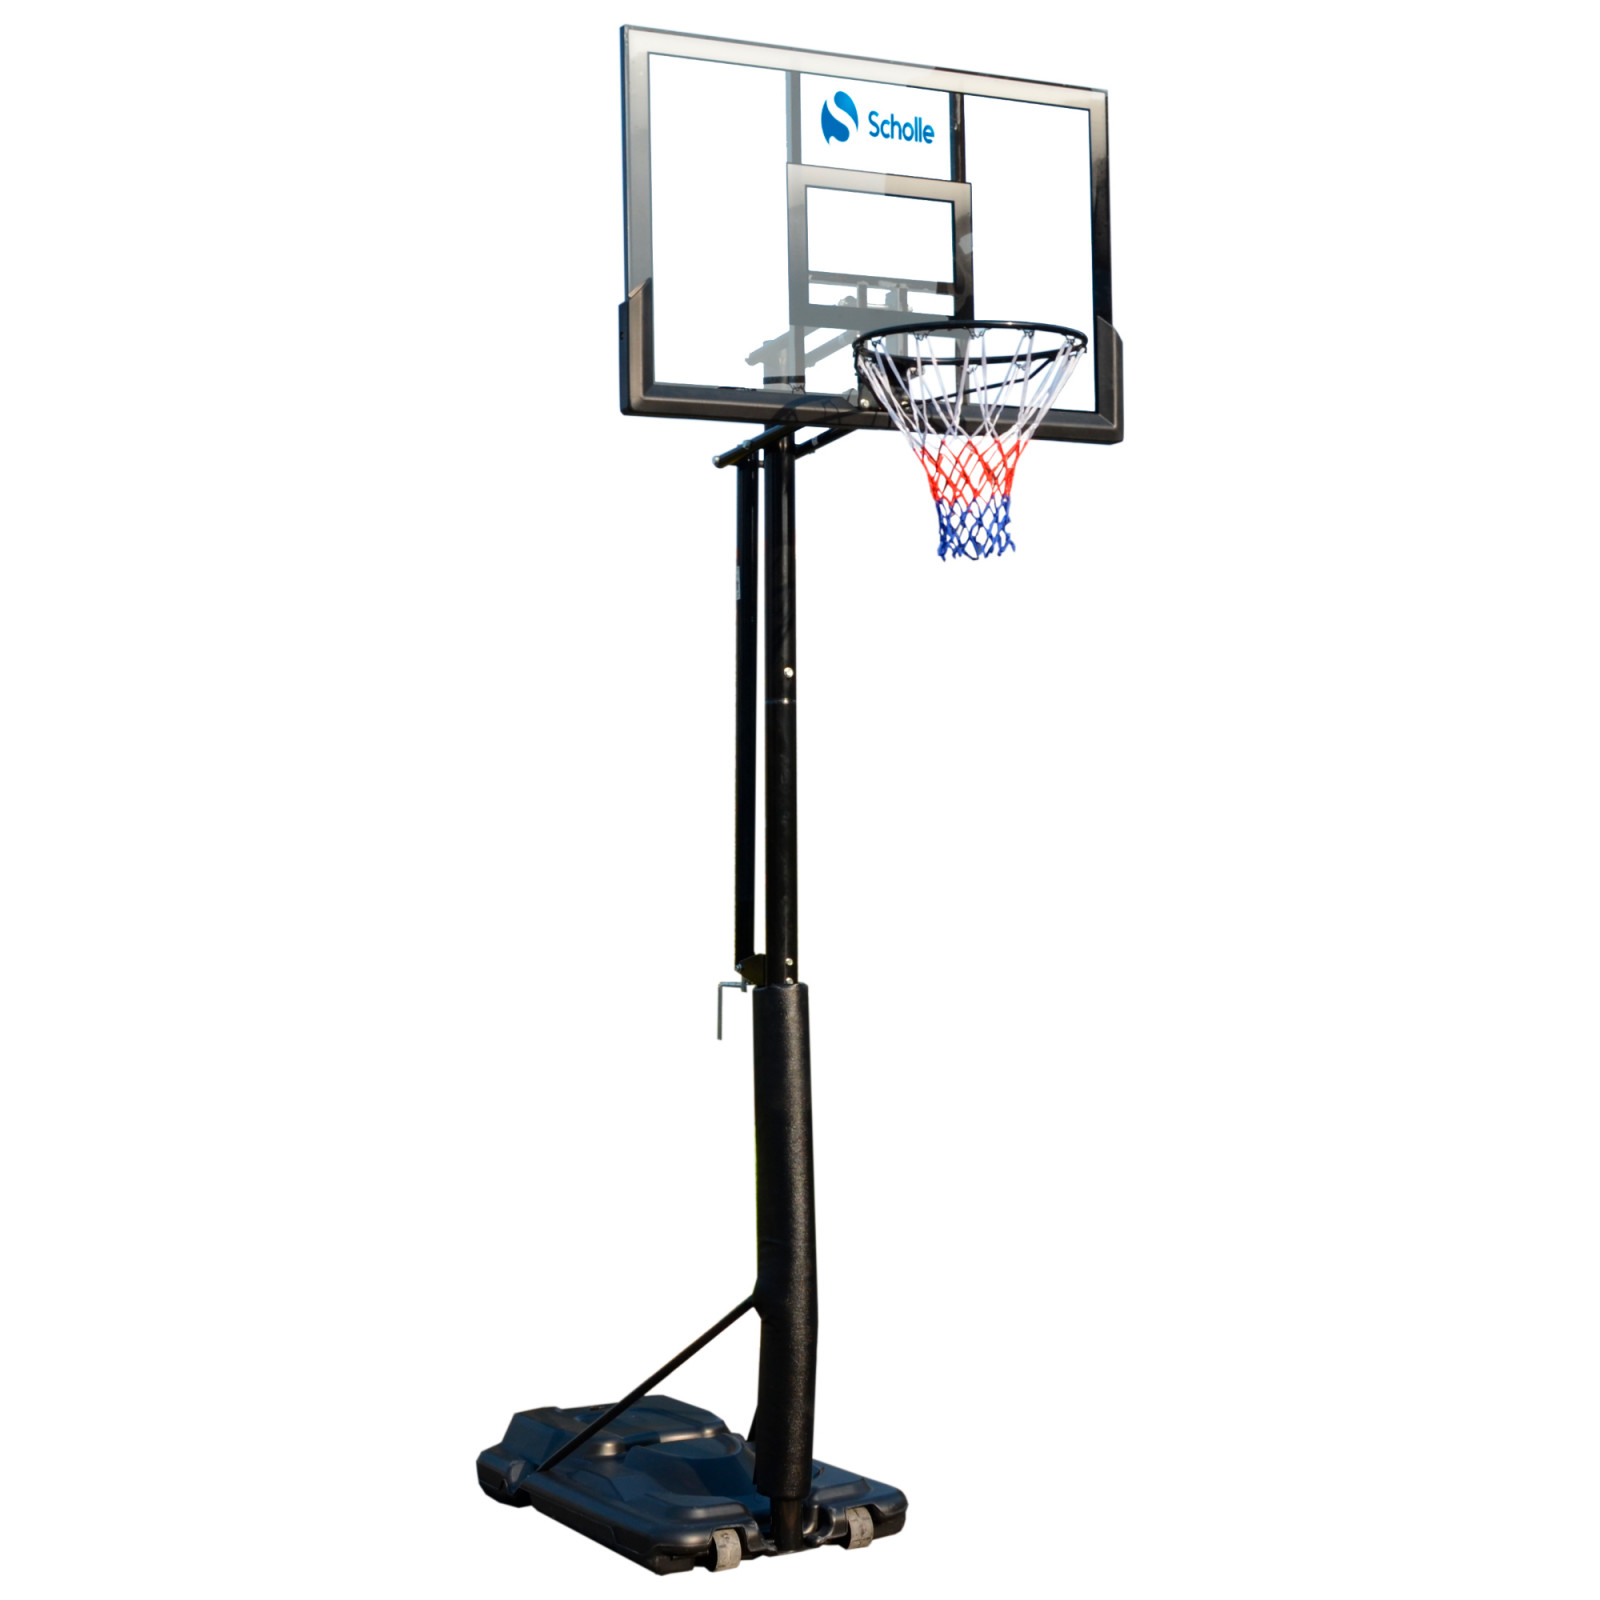 Стойка баскетбольная стационарная. Scholle баскетбольная стойка s025s. Мобильная баскетбольная стойка Scholle s023. Мобильная баскетбольная стойка Scholle s034. Стойка баскетбольная стационарная DFC ing50a.